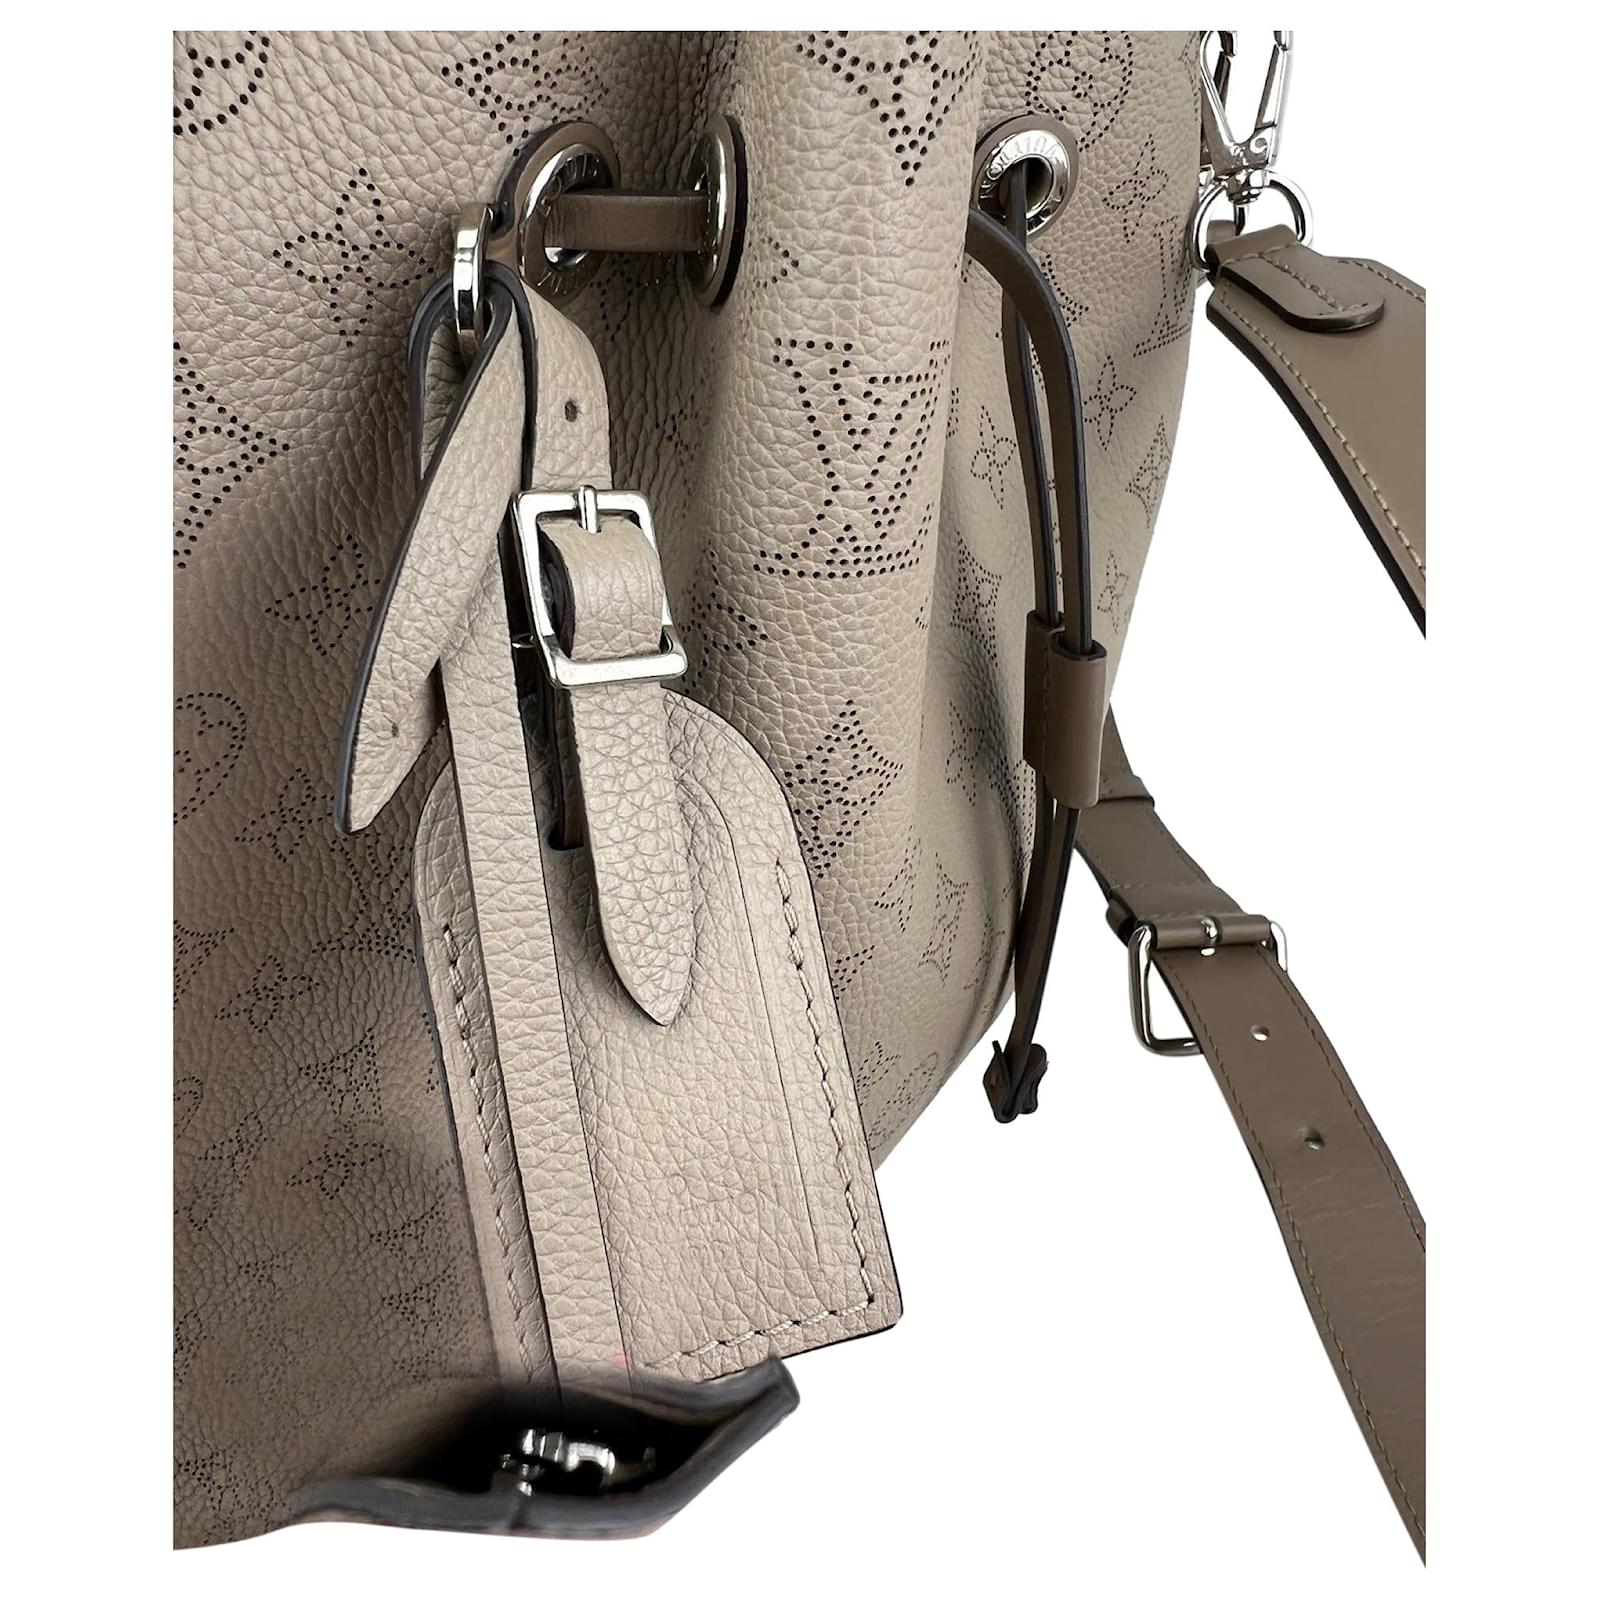 Louis Vuitton Muria Mahina Perforated Leather Handbag